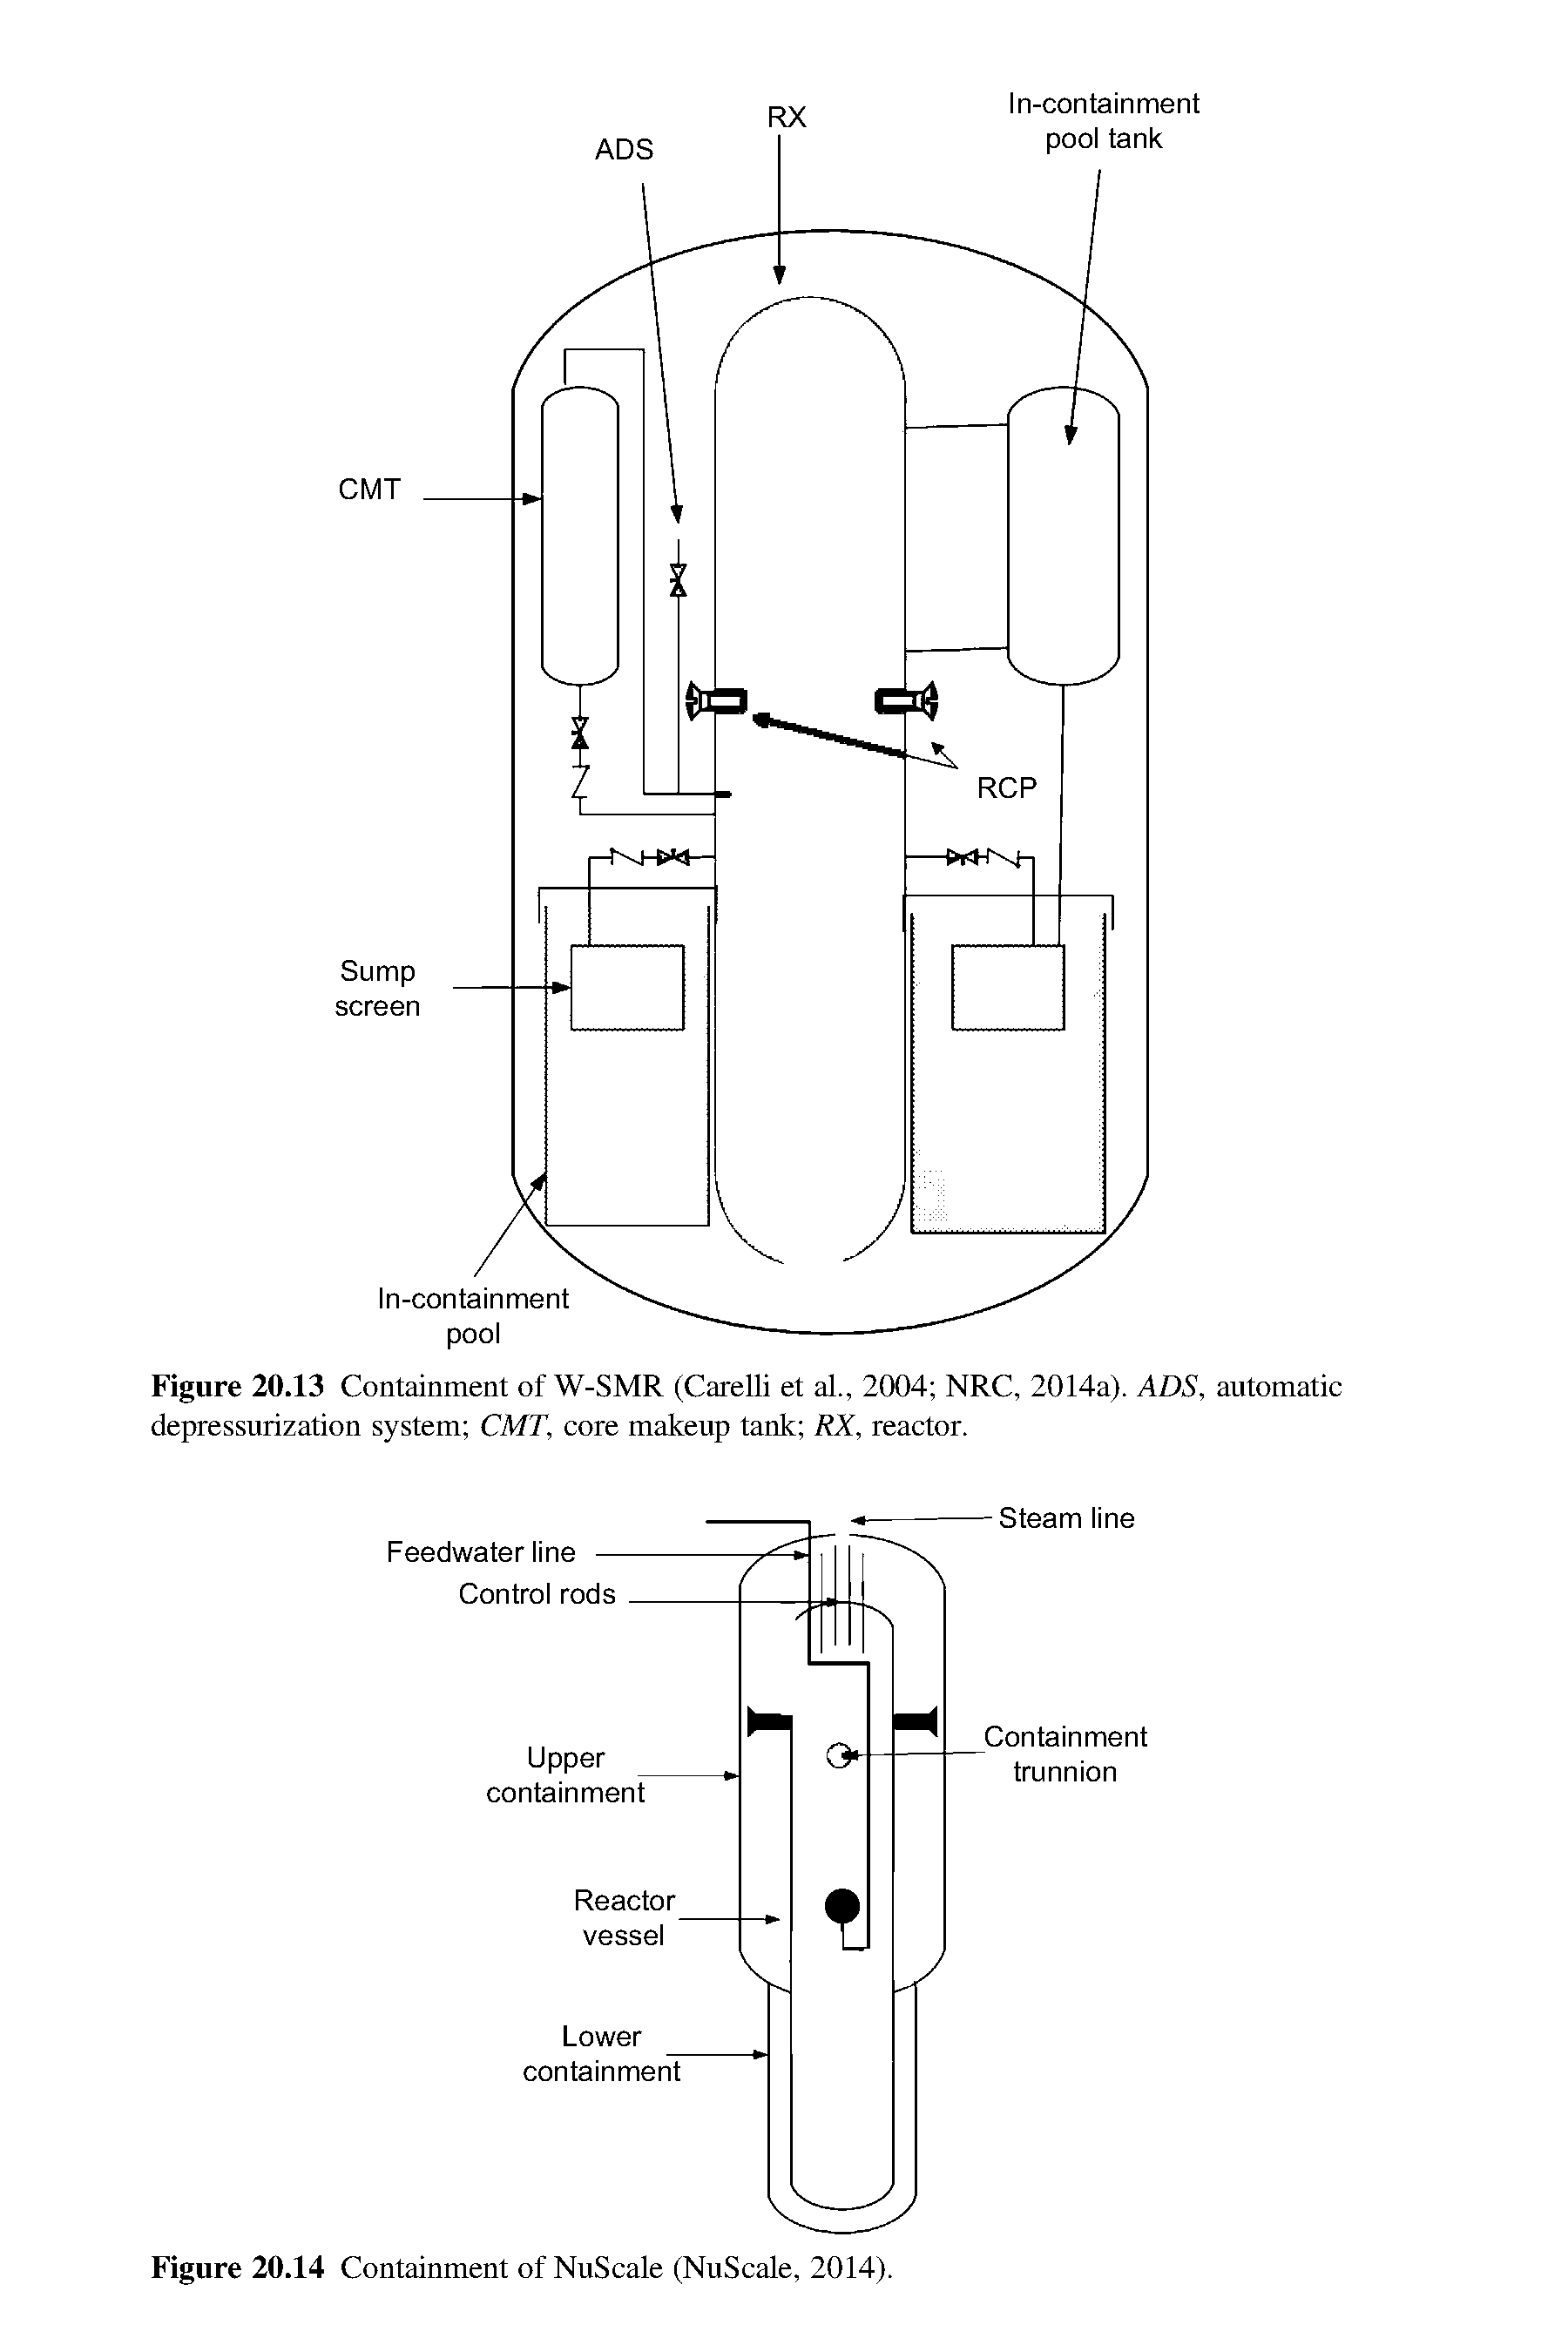 Figure 20.13 Containment of W-SMR (Carelli et al., 2004 NRC, 2014a). ADS, automatic depressurization system CMT, core makeup tank RX, reactor.